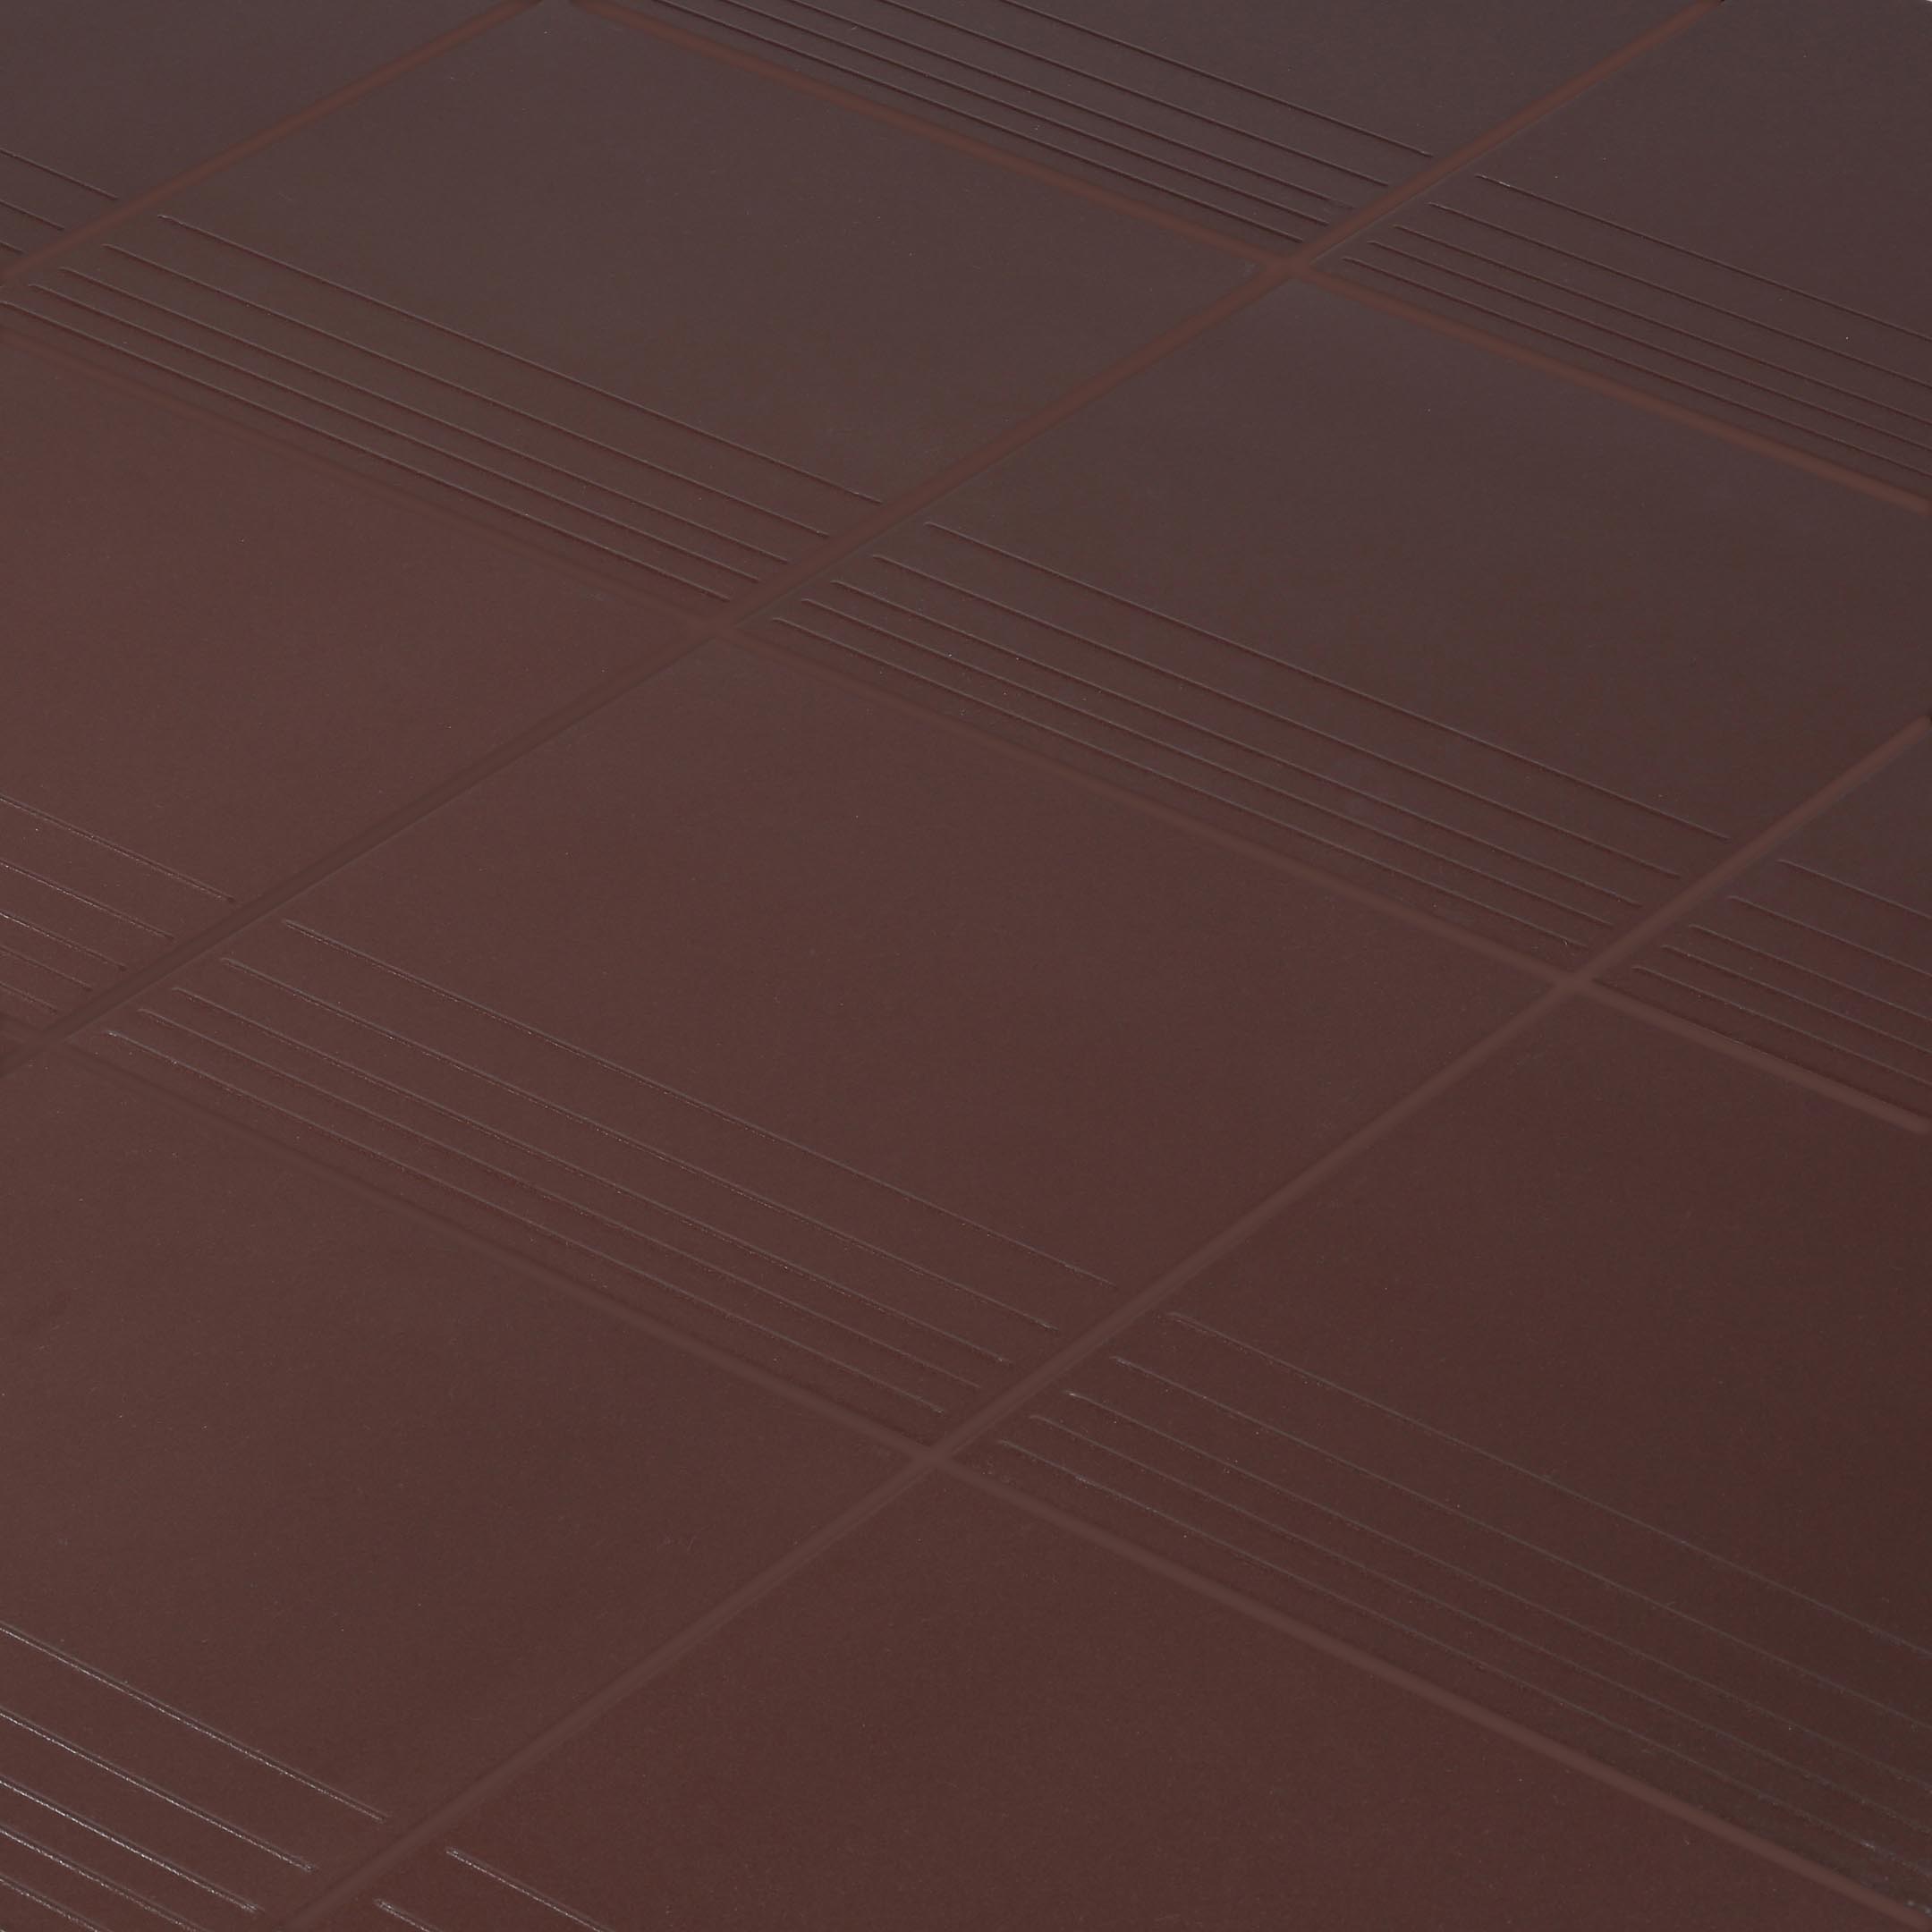 фото Керамогранит ступень керамин амстердам 4 коричневый 298x298x8 мм (15 шт.=1,33 кв.м) keramin